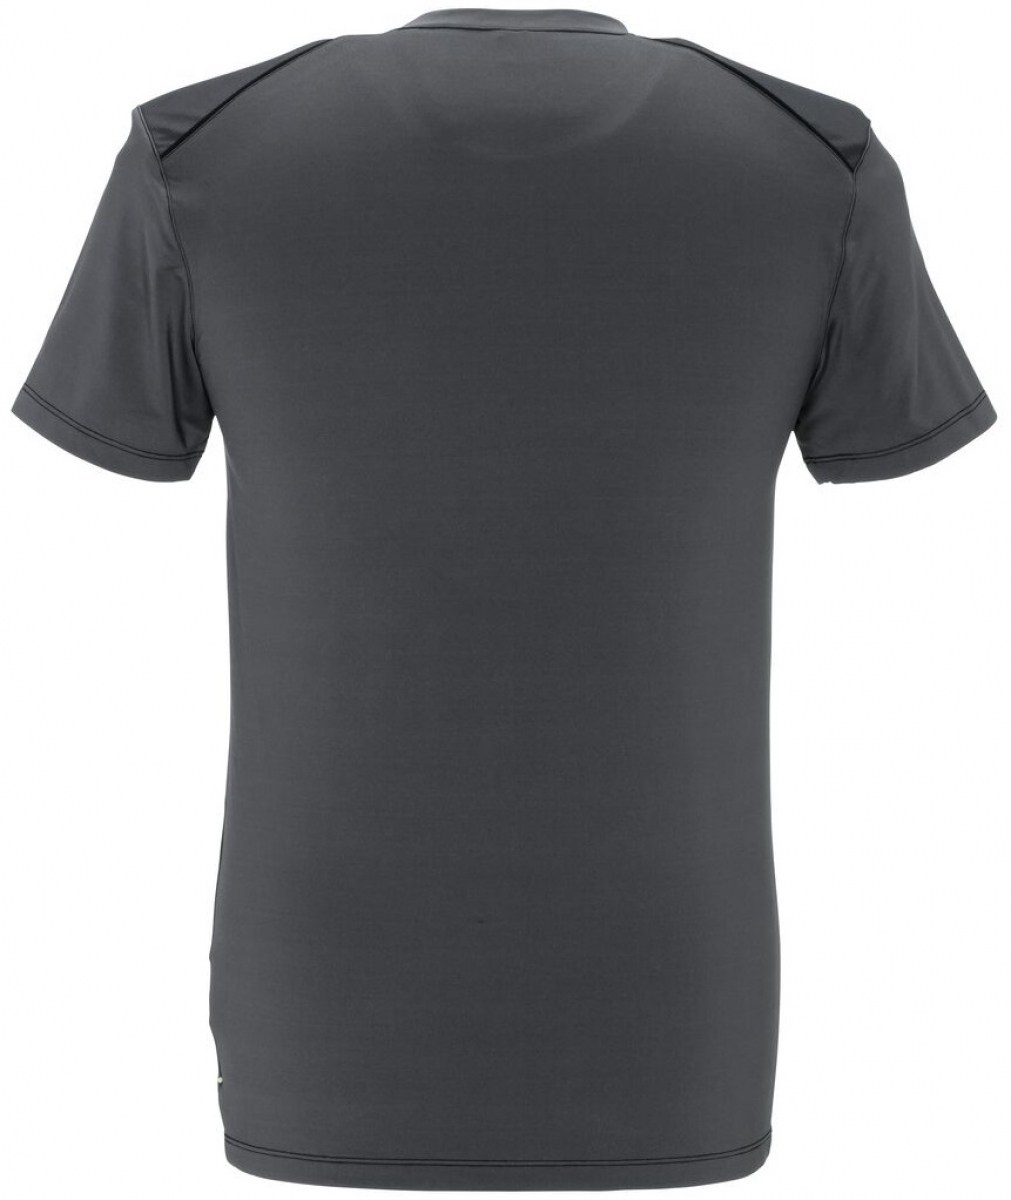 PLANAM-Worker-Shirts, T-Shirts, Duraline, 270 g/m, grau/schwarz